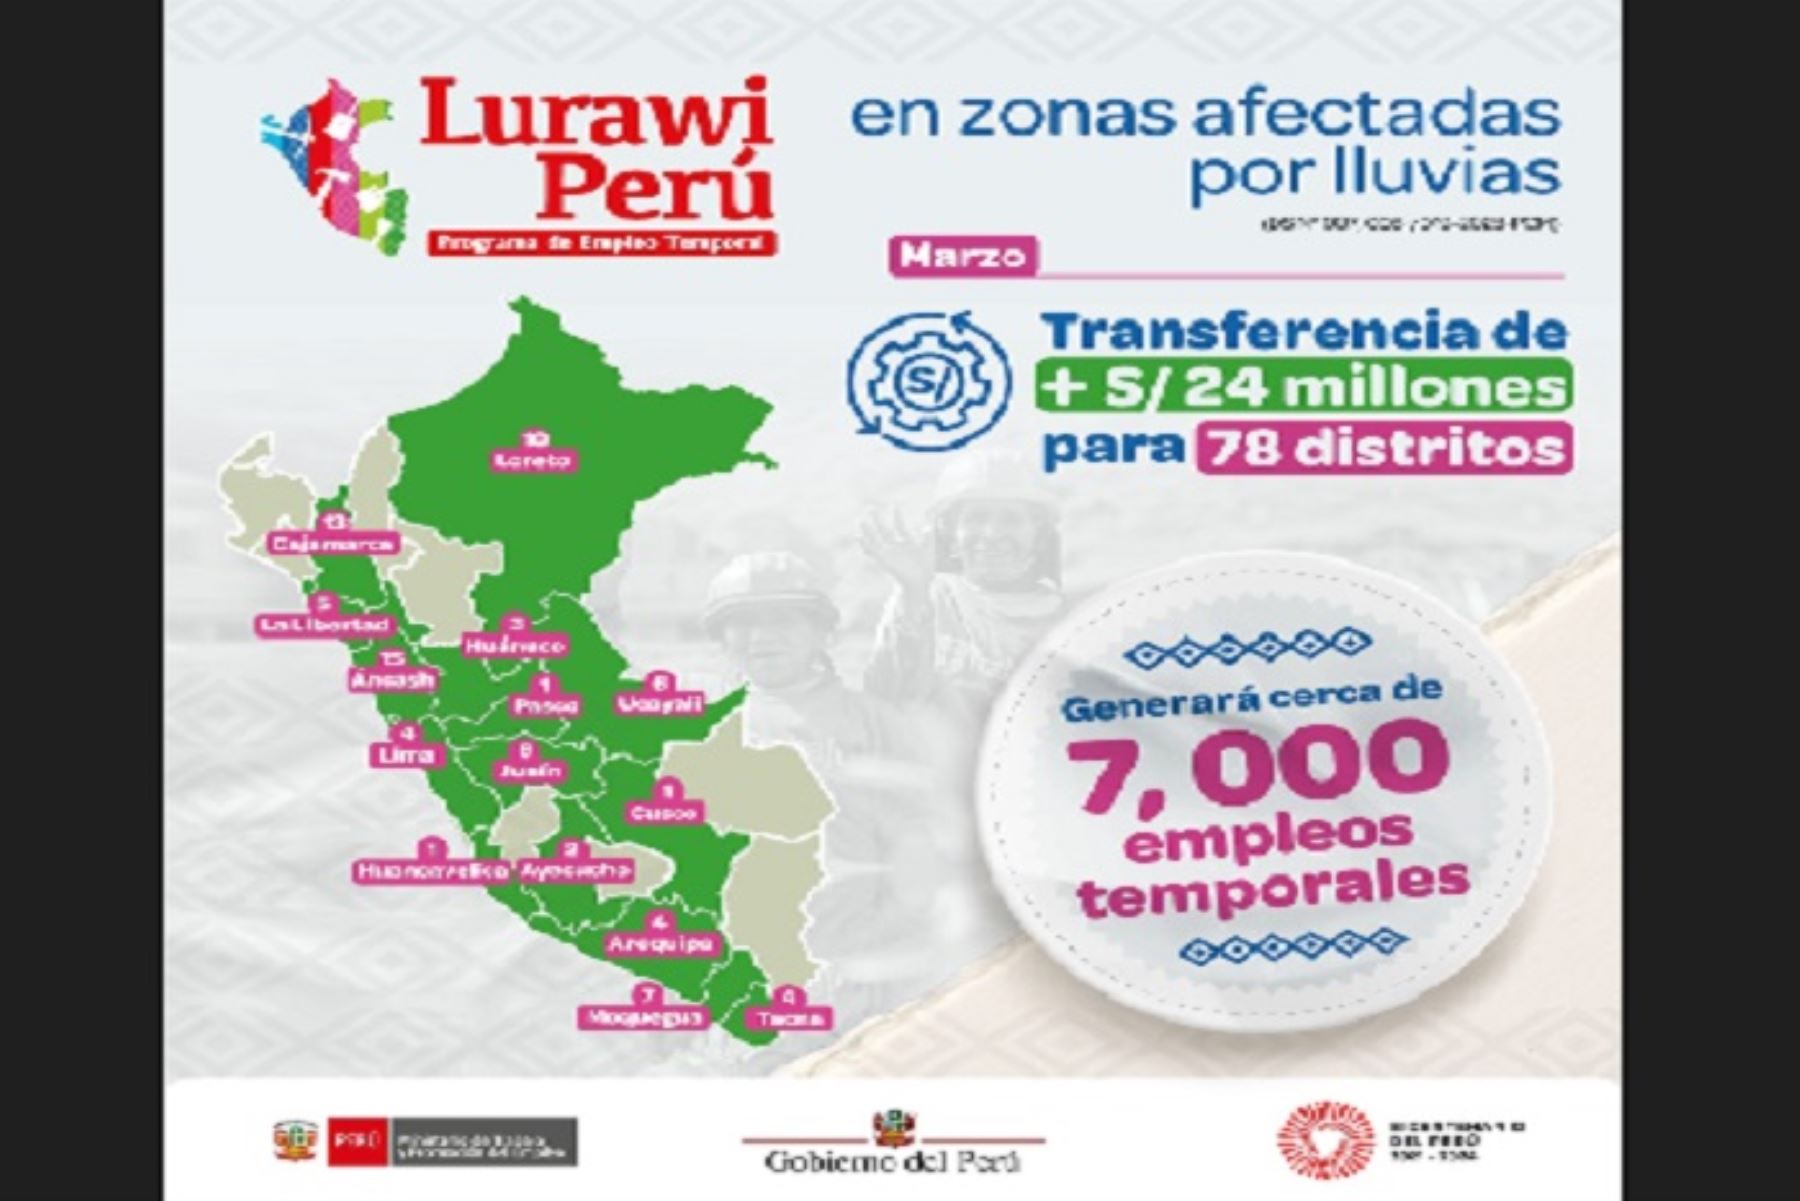 El ministro de Trabajo y Promoción del Empleo, Alfonso Adrianzén, precisó que para garantizar que el programa Lurawi Perú llegue a los distritos más vulnerables, se ha realizado el acompañamiento técnico correspondiente.